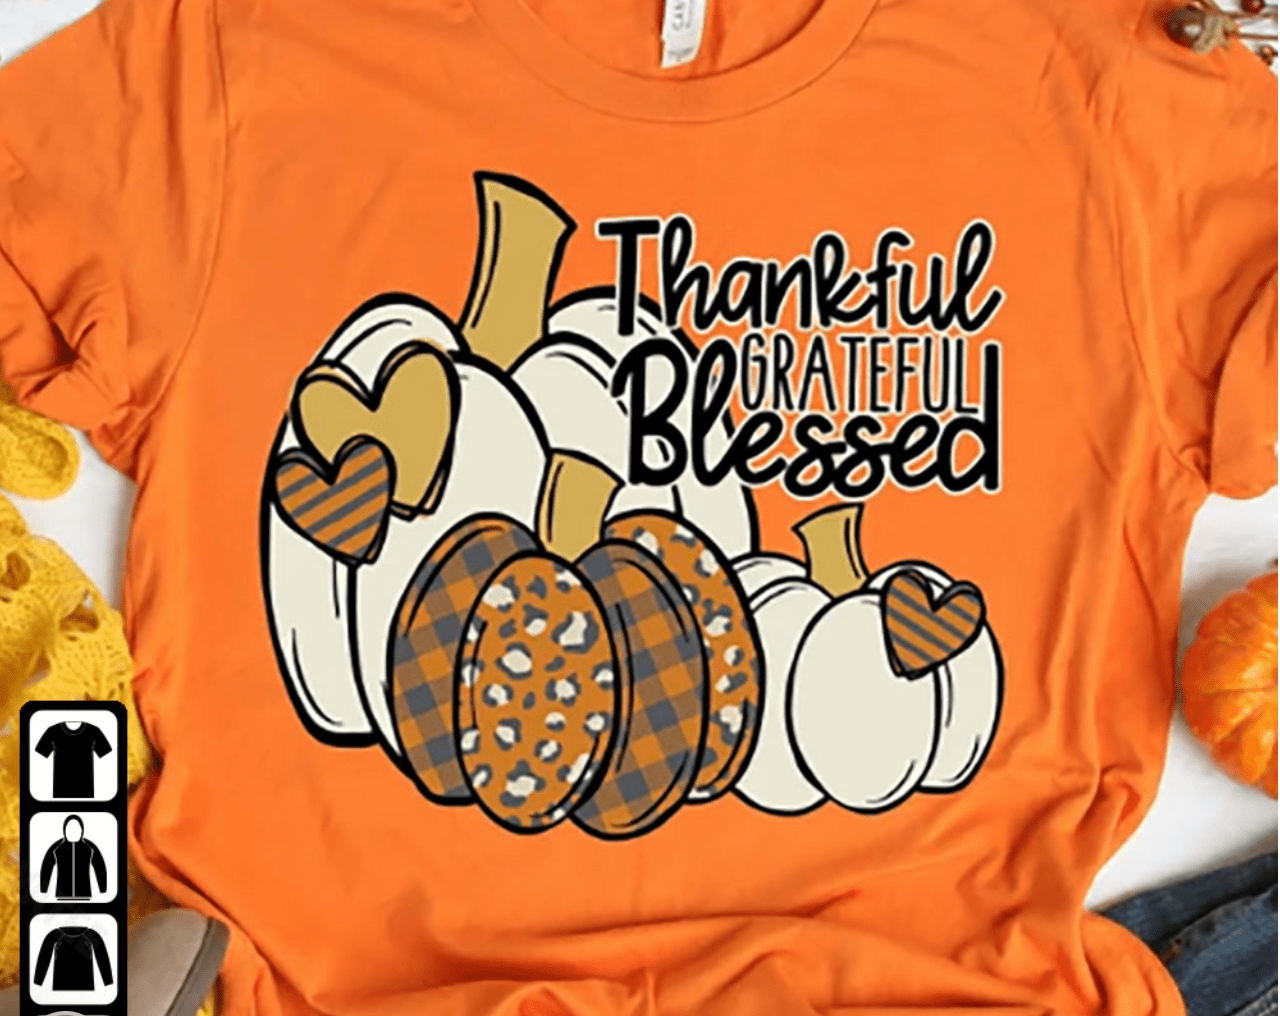 thankful grateful blessed pumpkin shirt